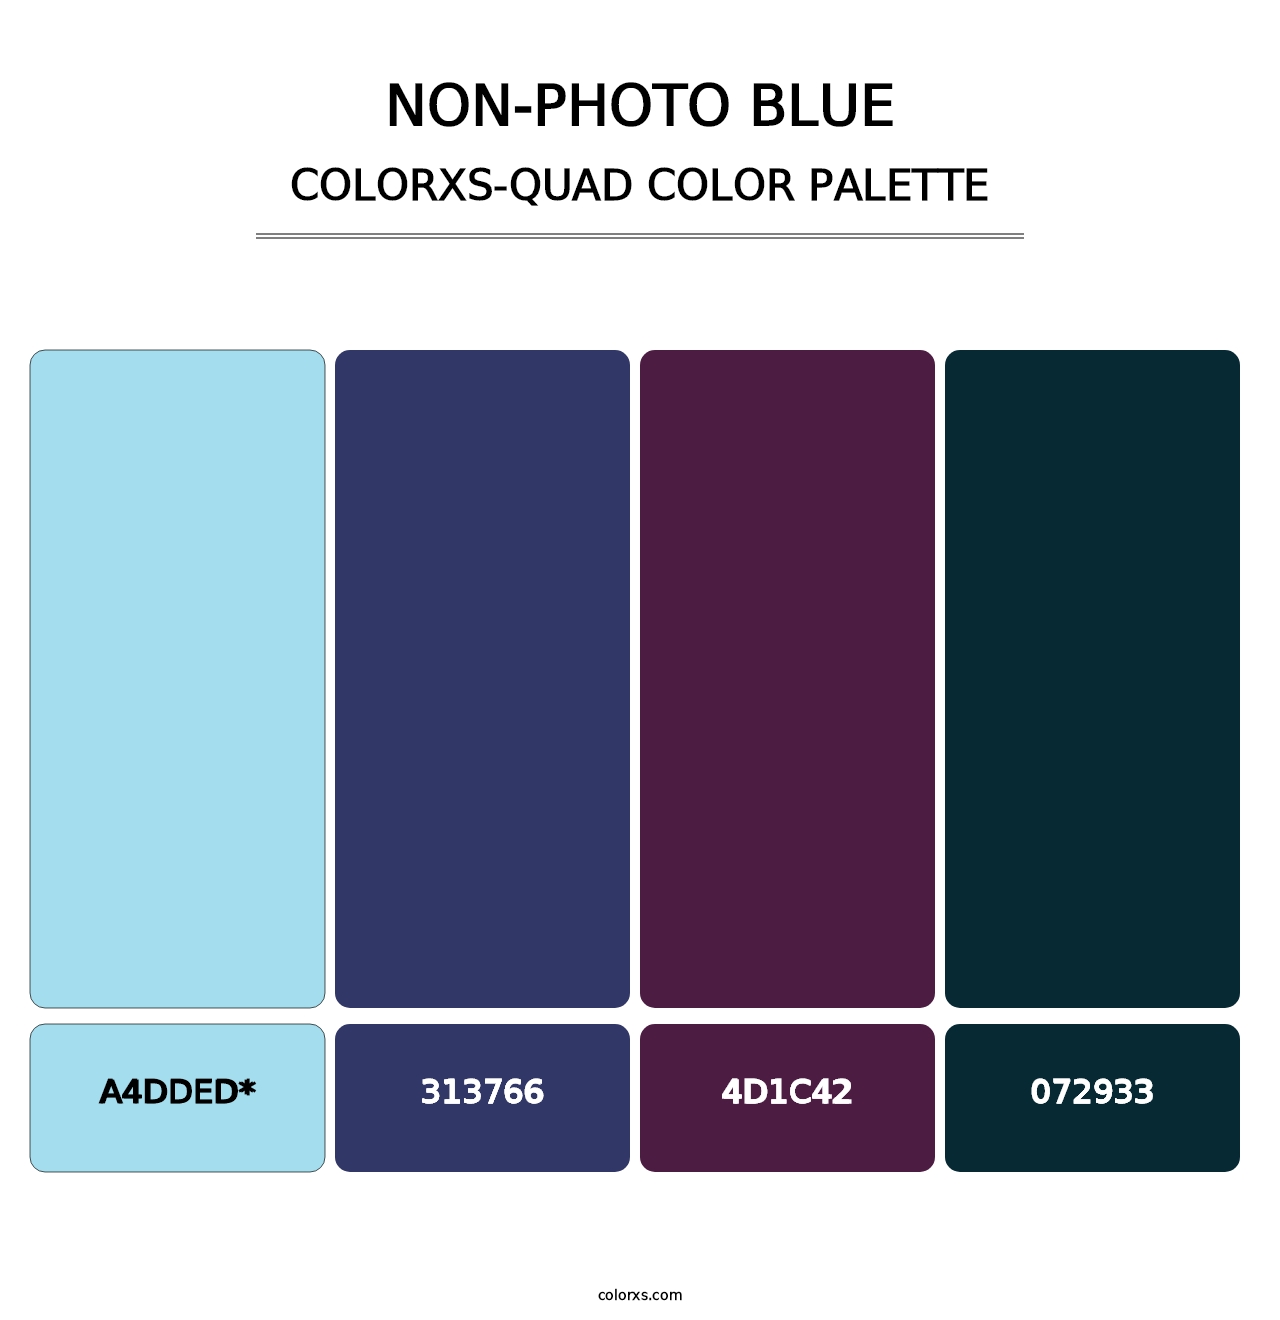 Non-photo Blue - Colorxs Quad Palette